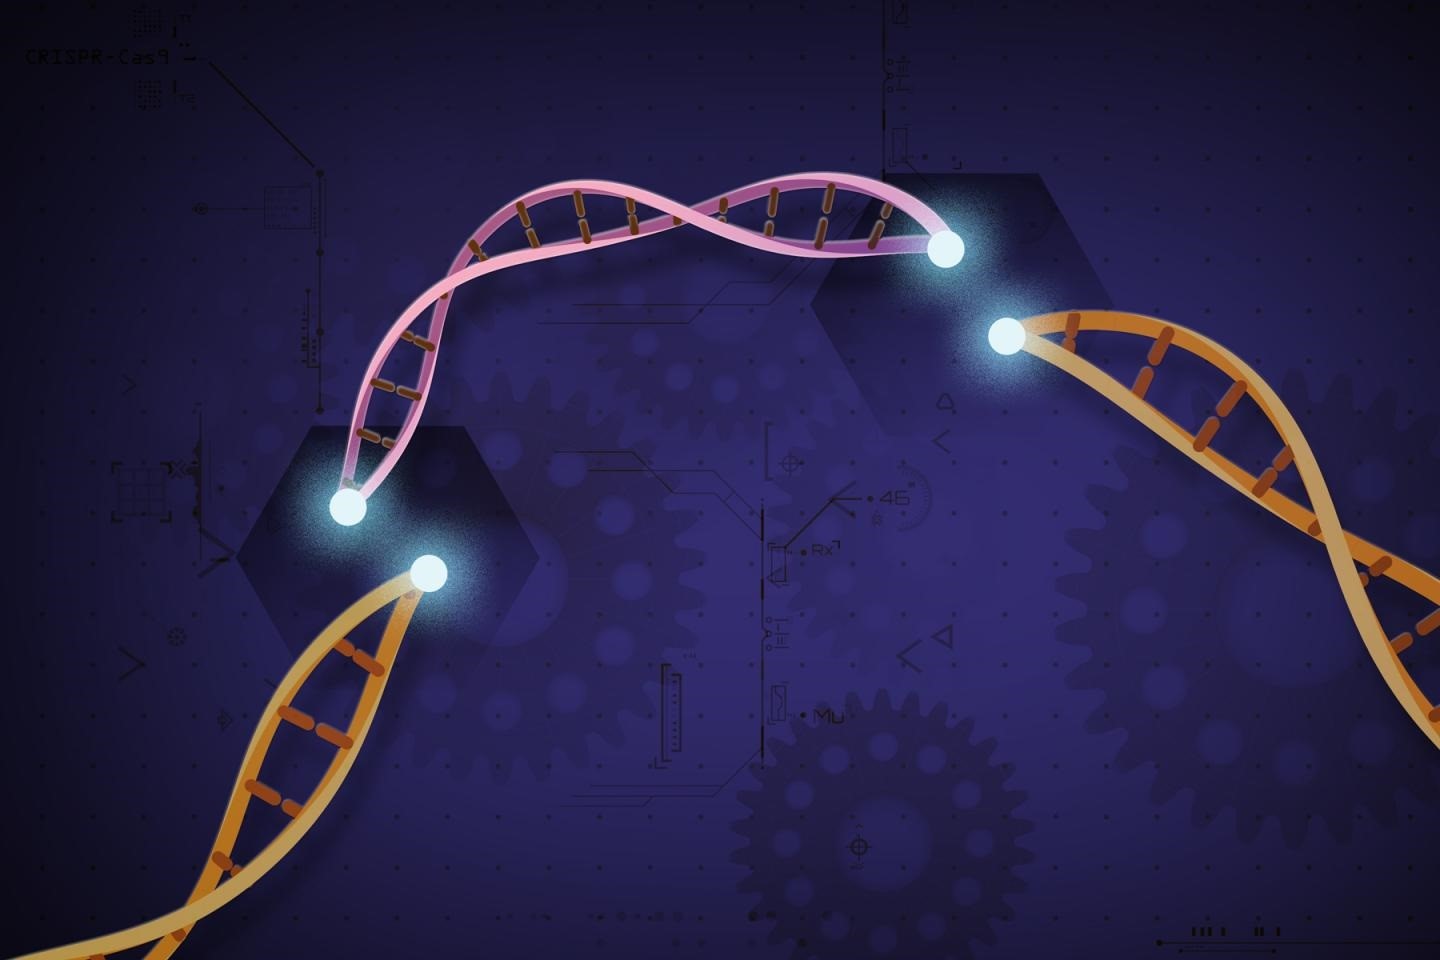 La tecnología CRISPR ya está lista para erradicar varias enfermedades (NIH)
